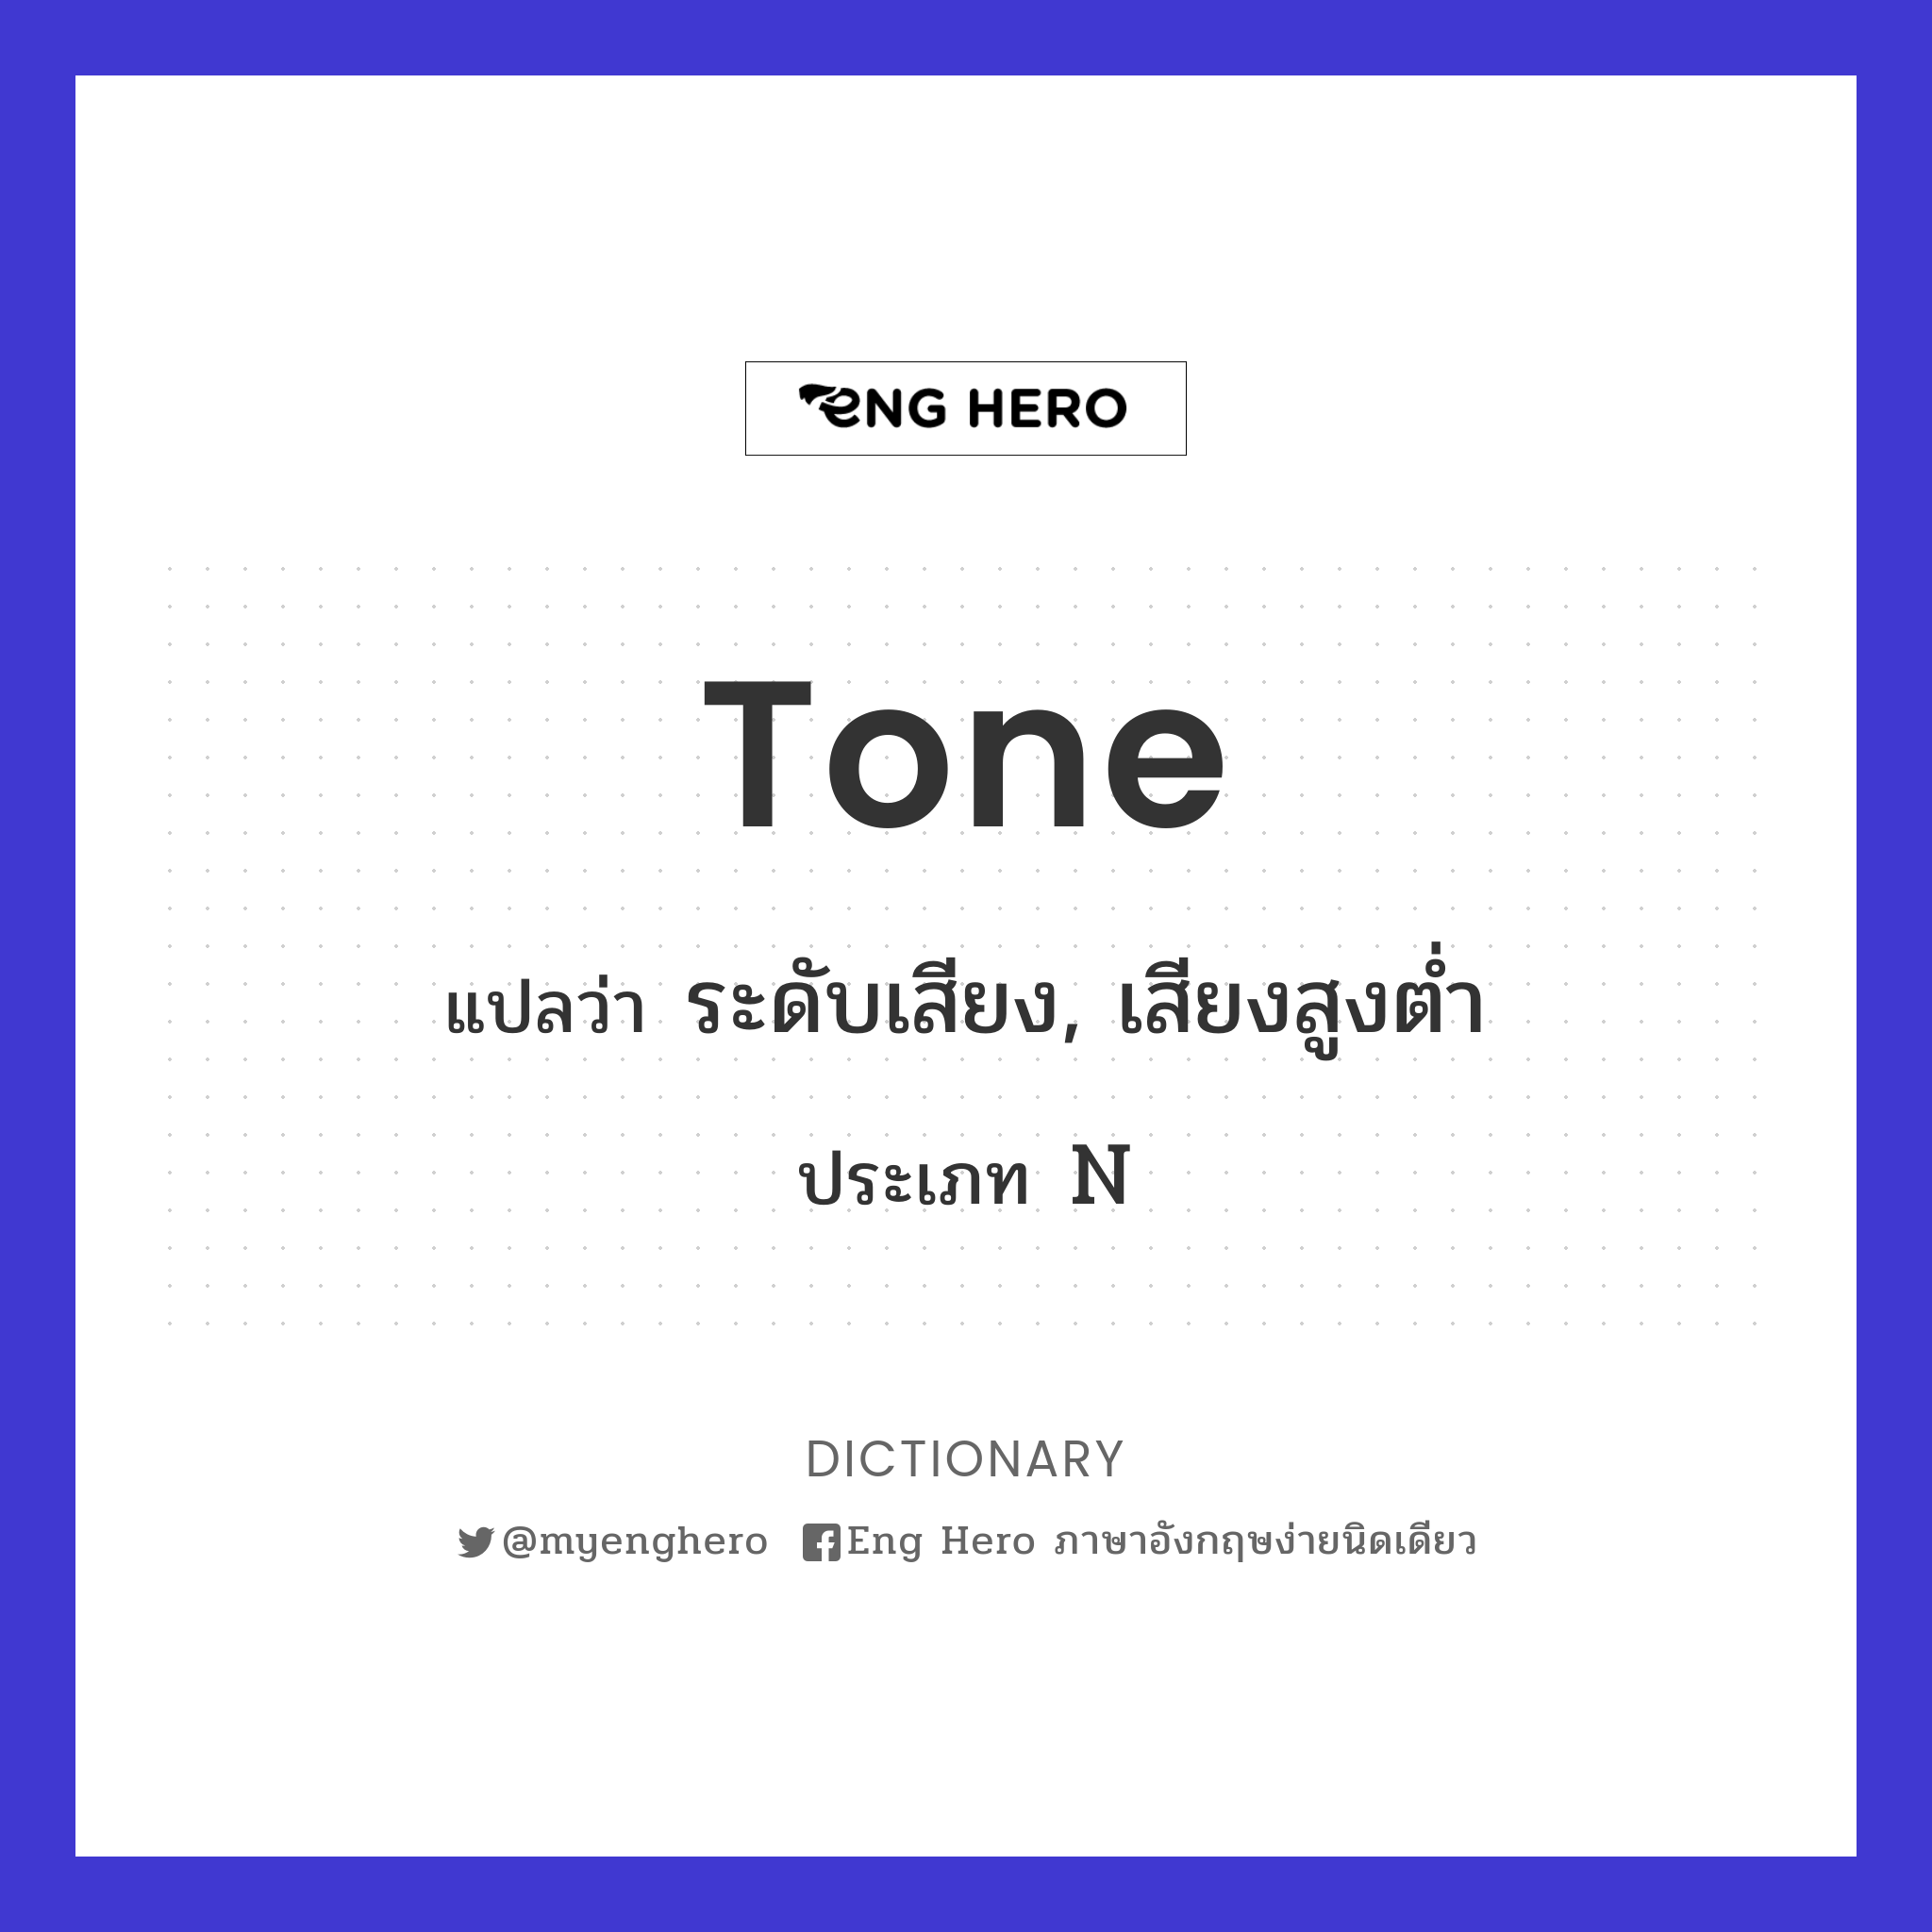 tone